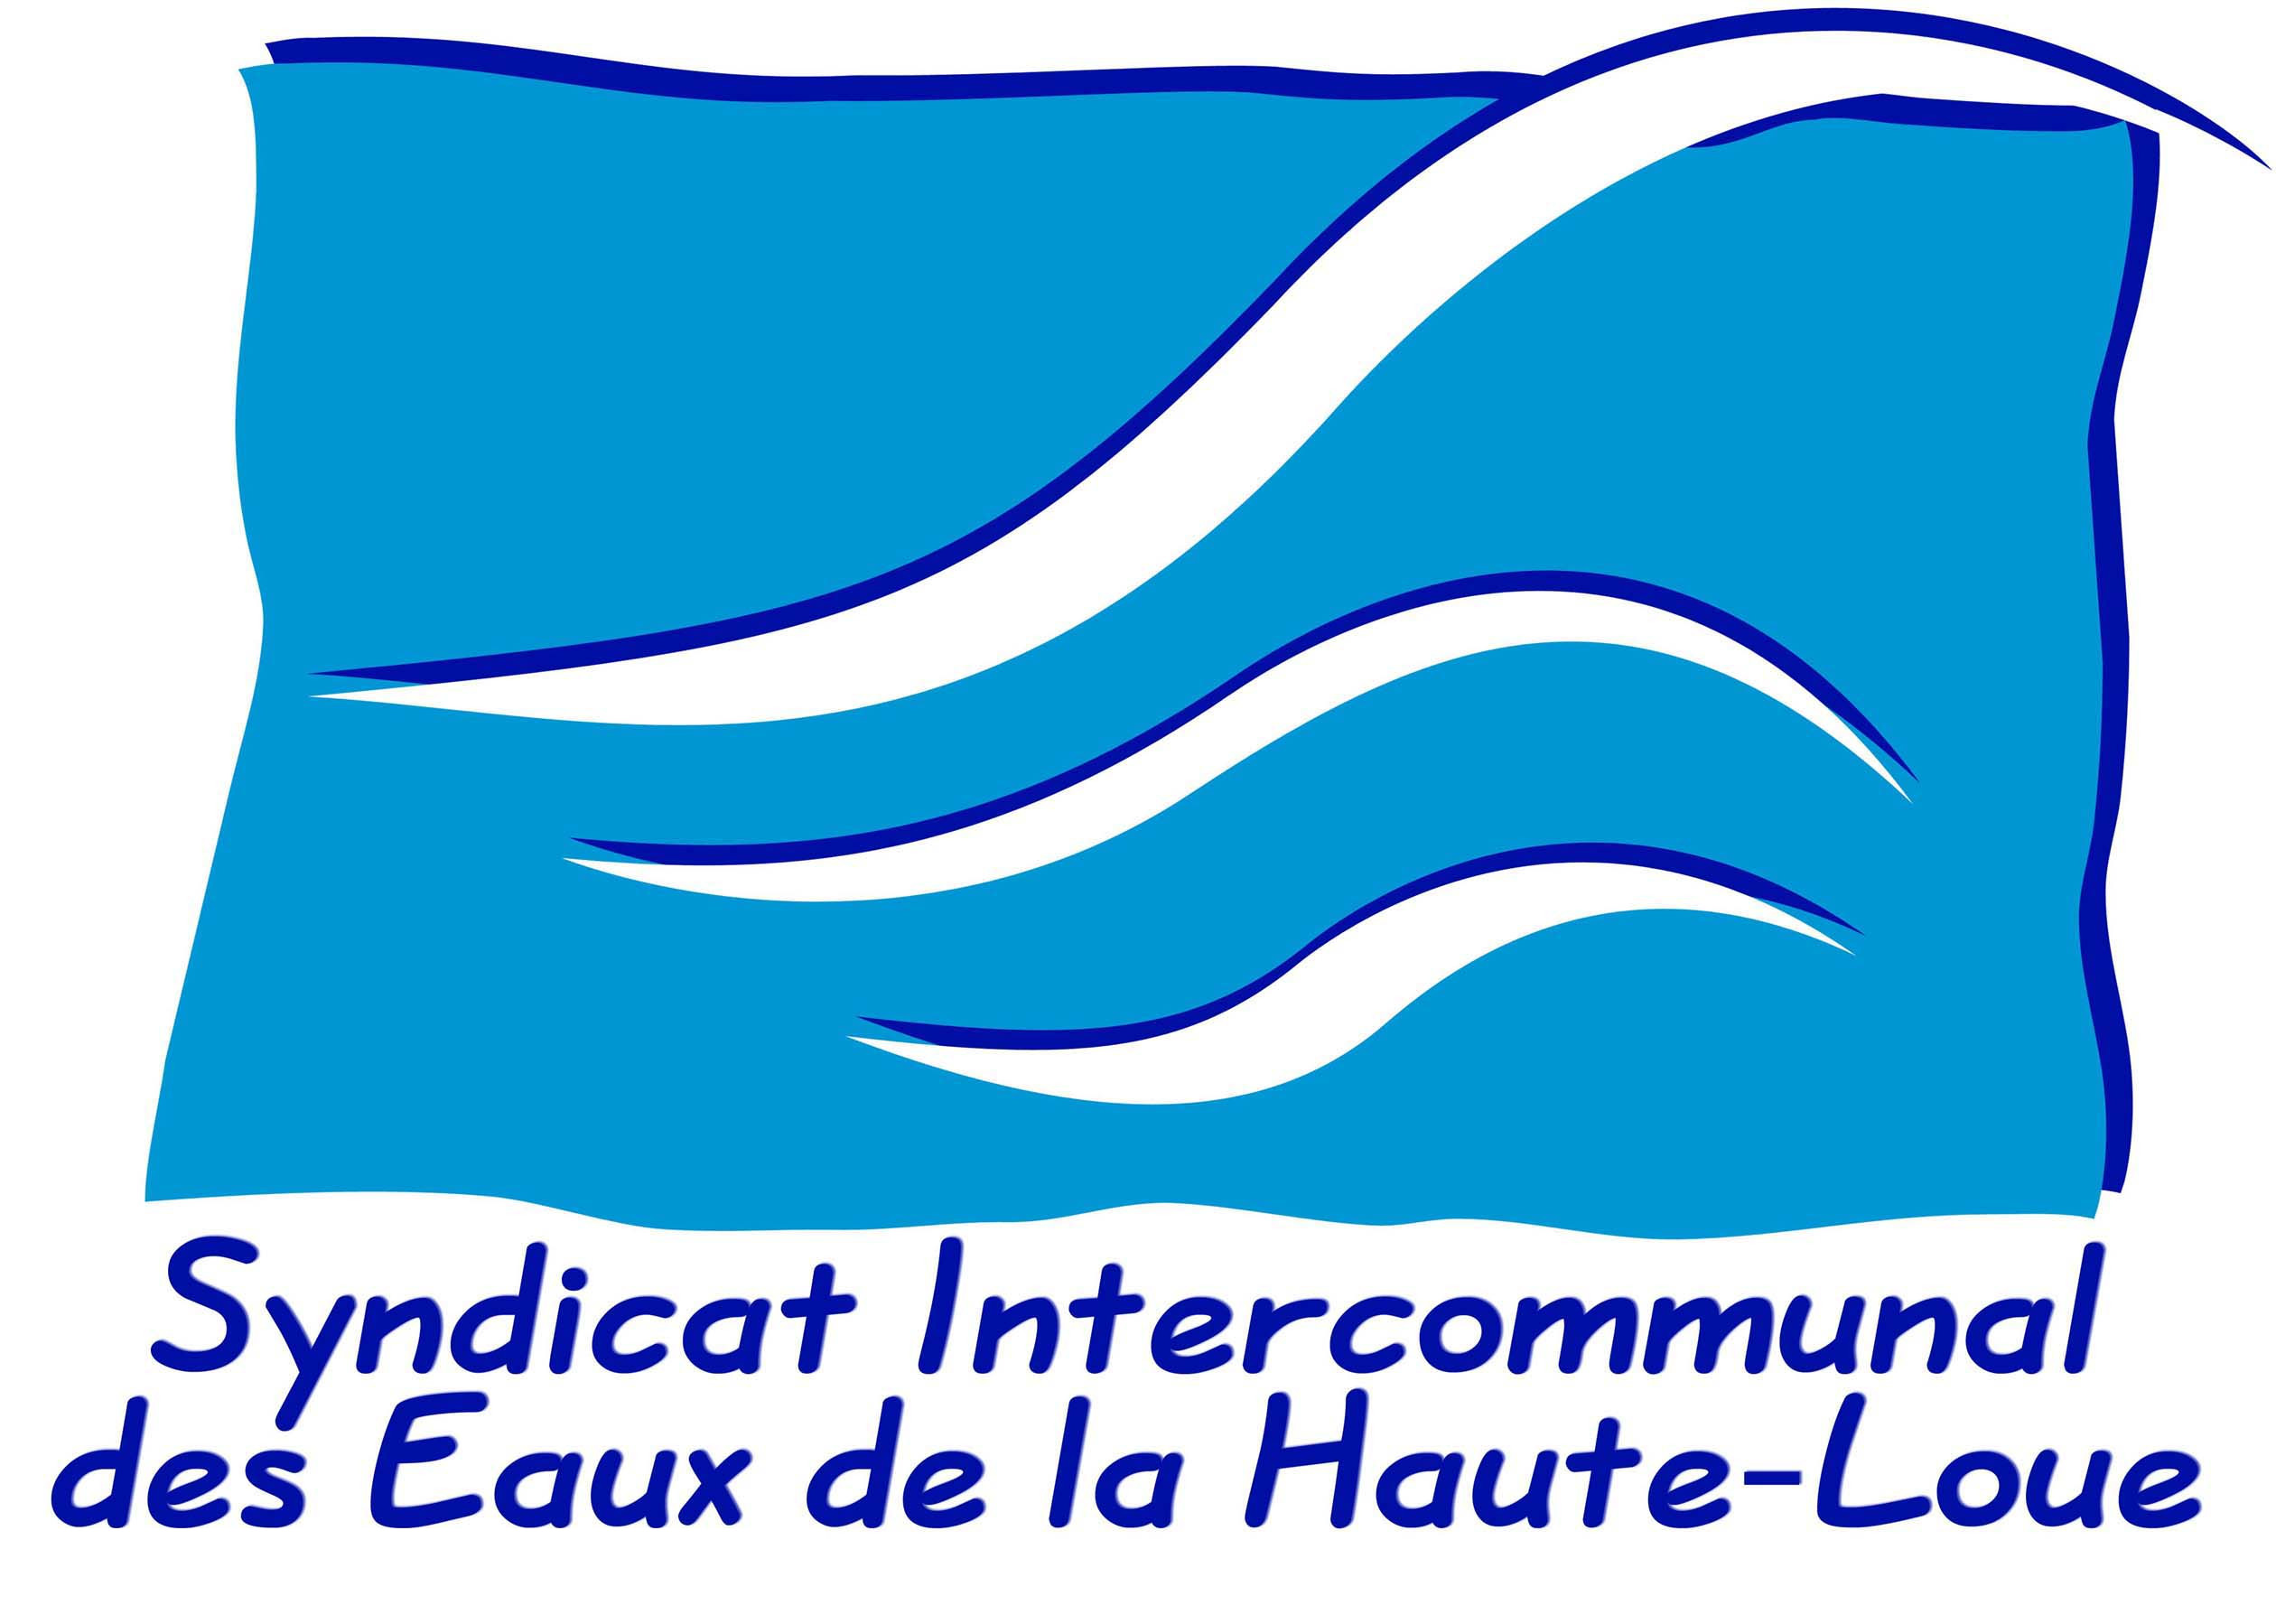 Syndicat intercommunal des Eaux de la Haute-Loue